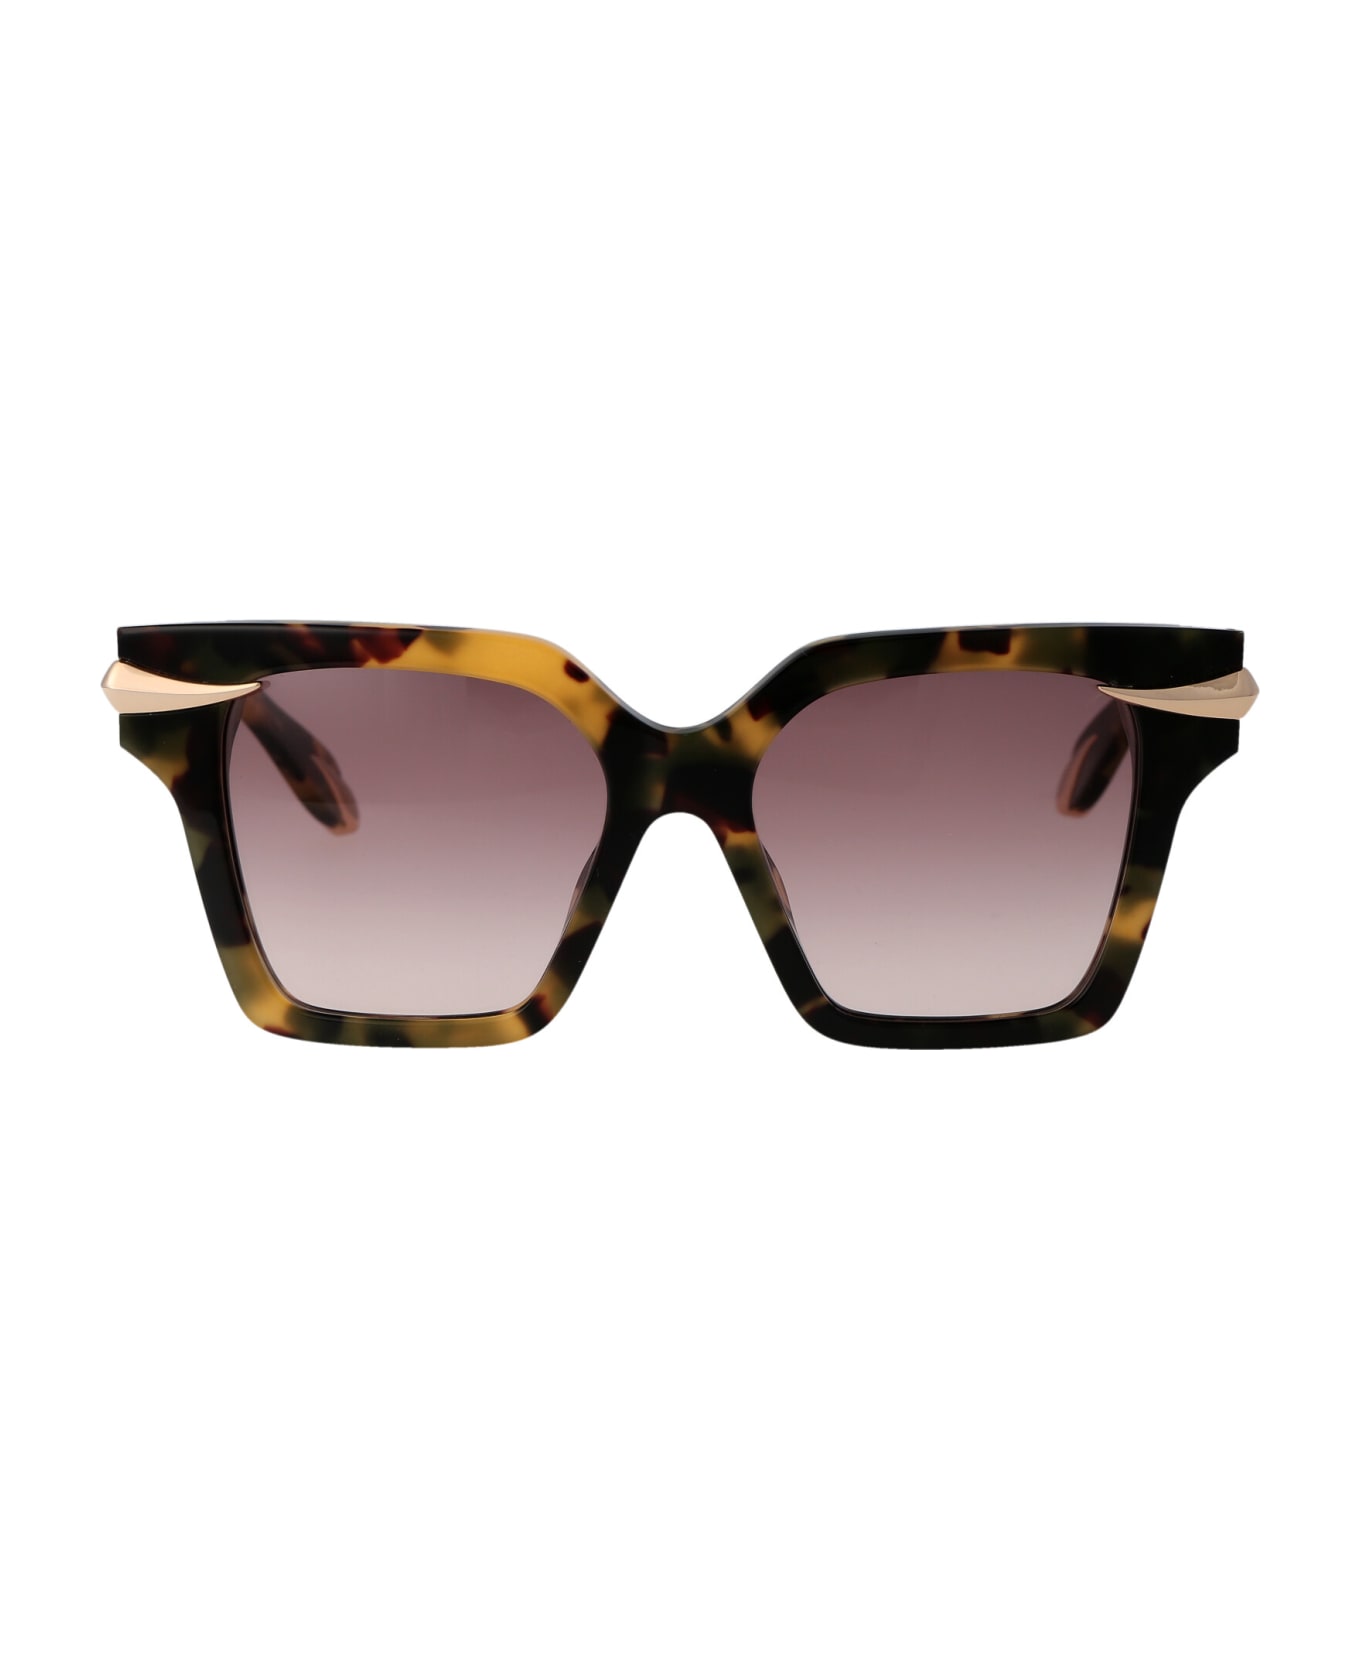 Roberto Cavalli Src002m Sunglasses - 0AGG BROWN